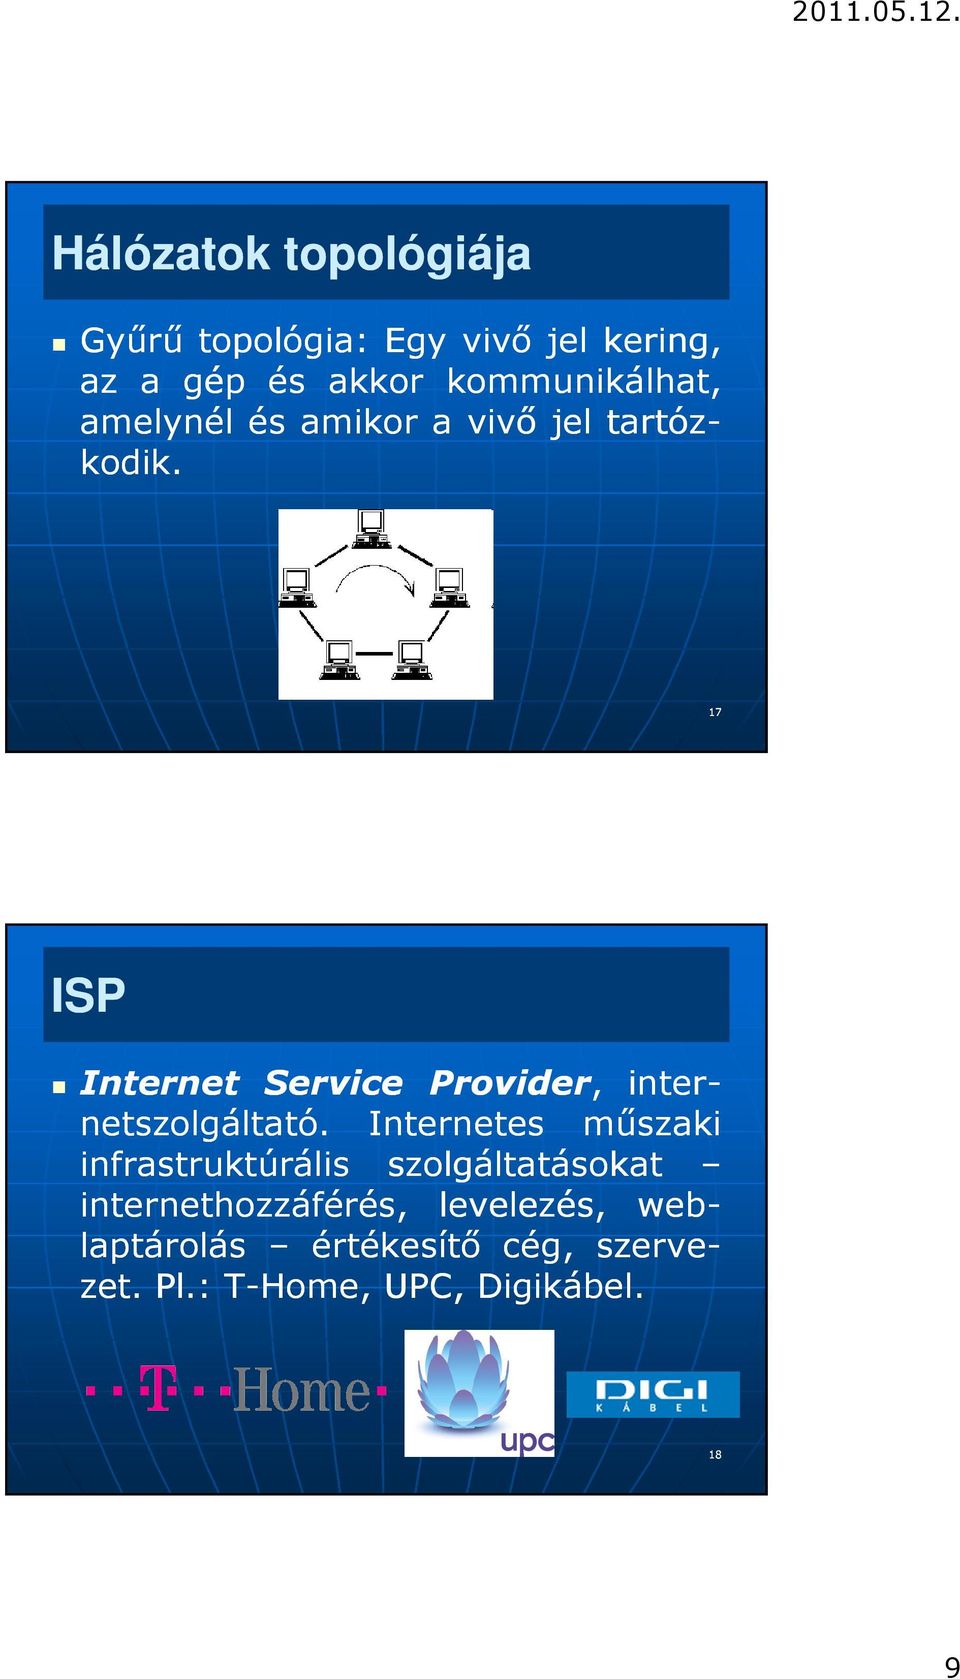 Internet Service Provider, inter- netszolgáltató.